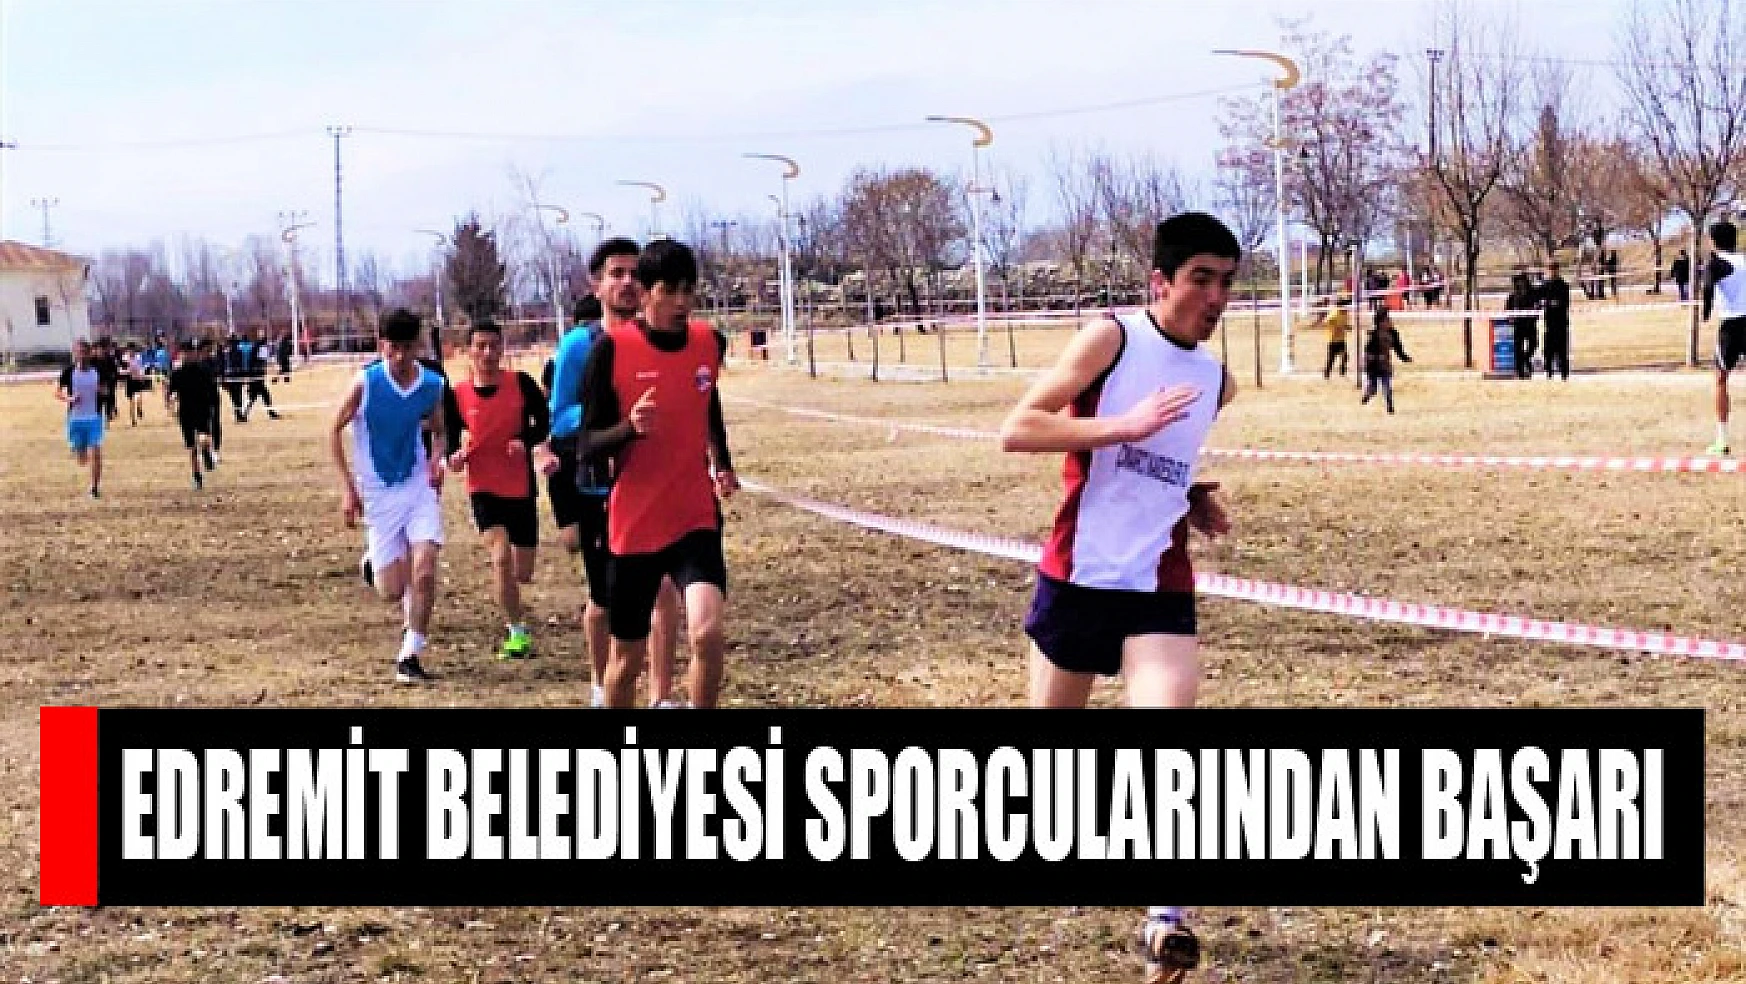 Edremit Belediyesi sporcularından başarı